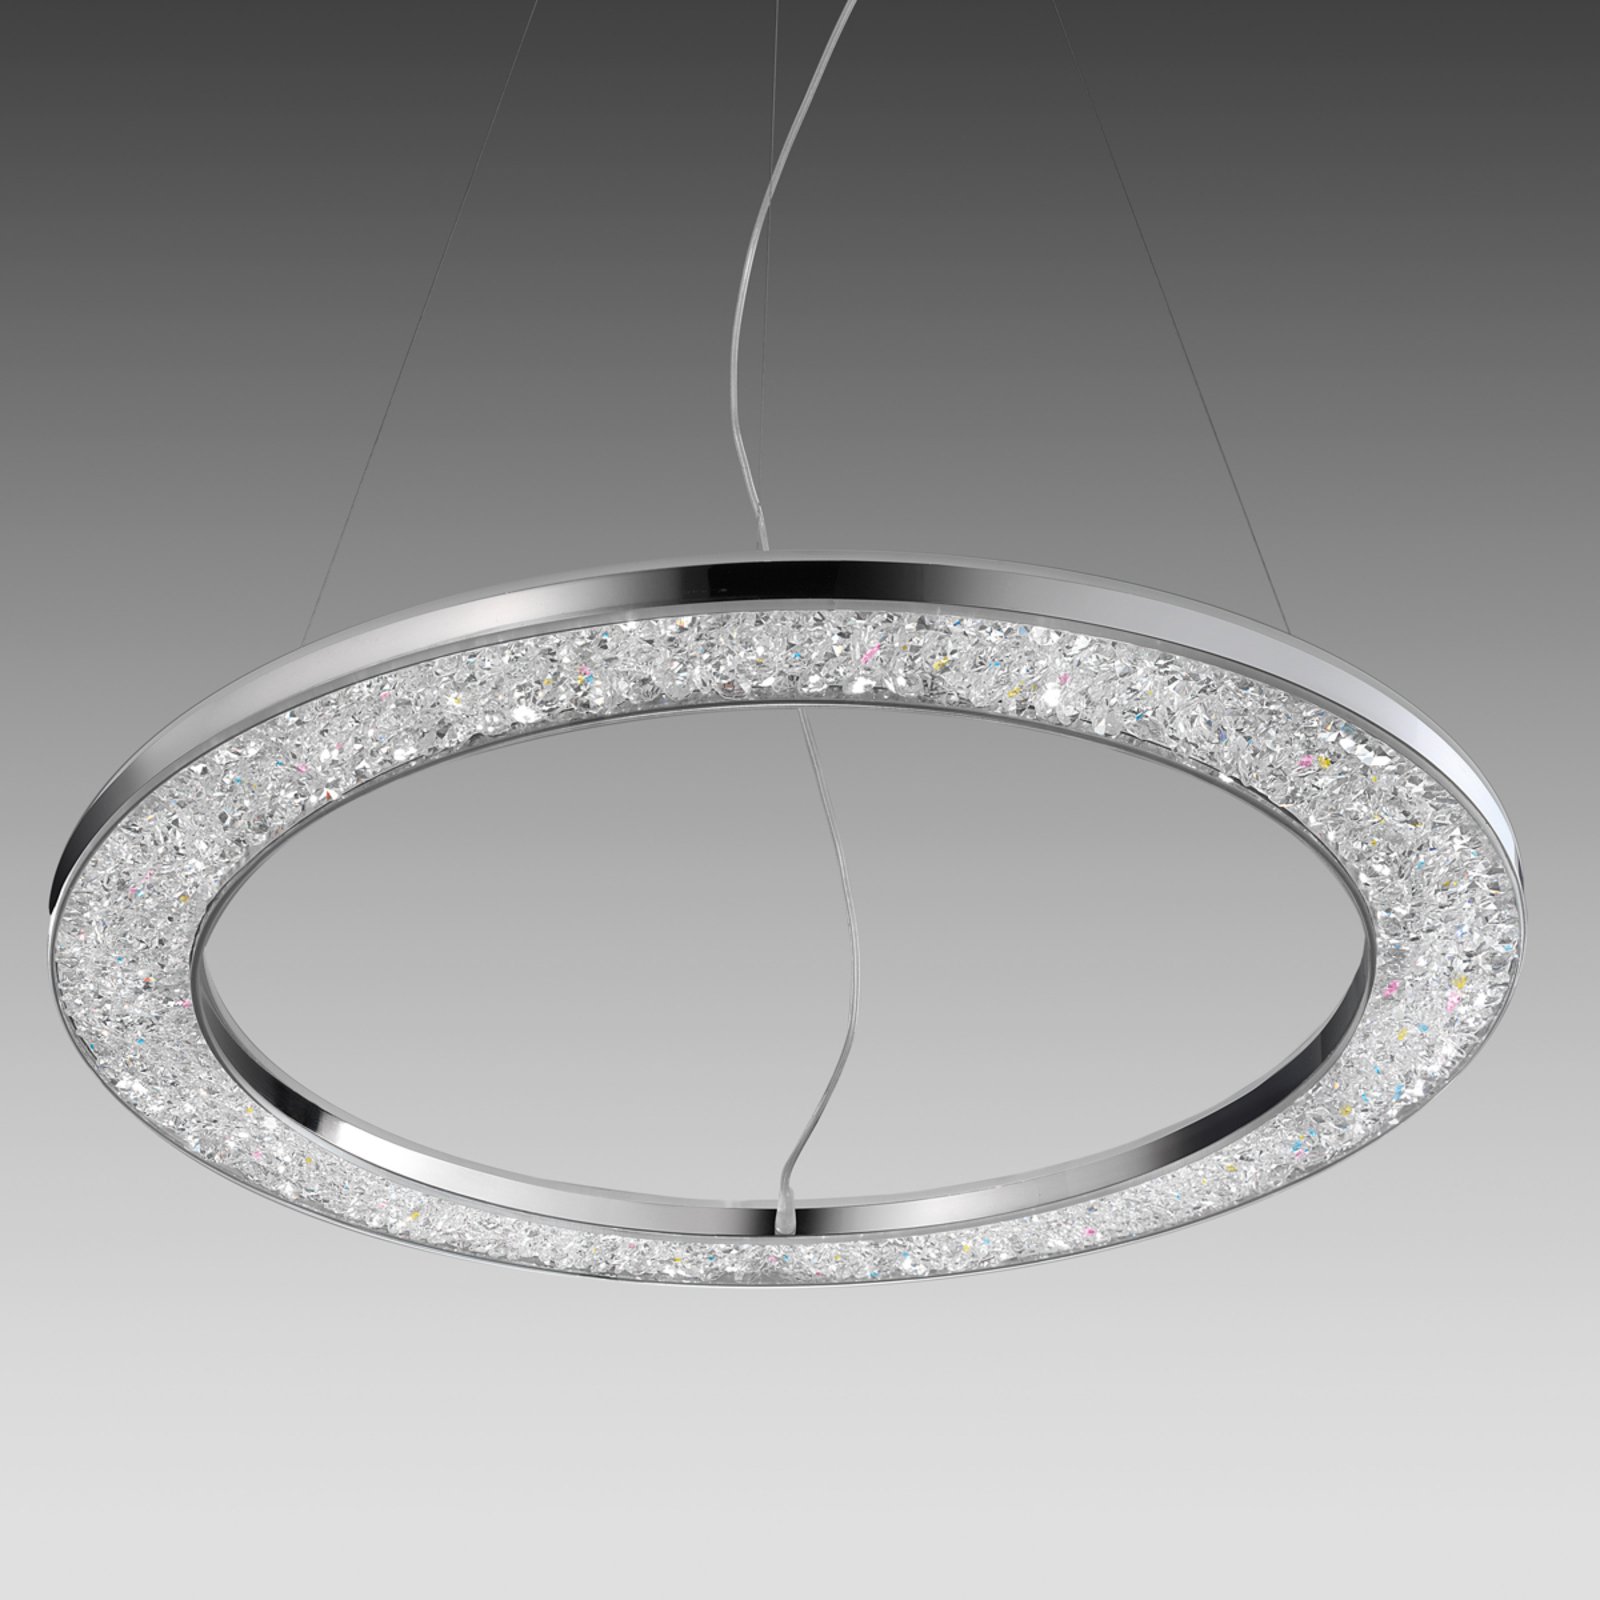 Male - Designer ceiling light 60 cm